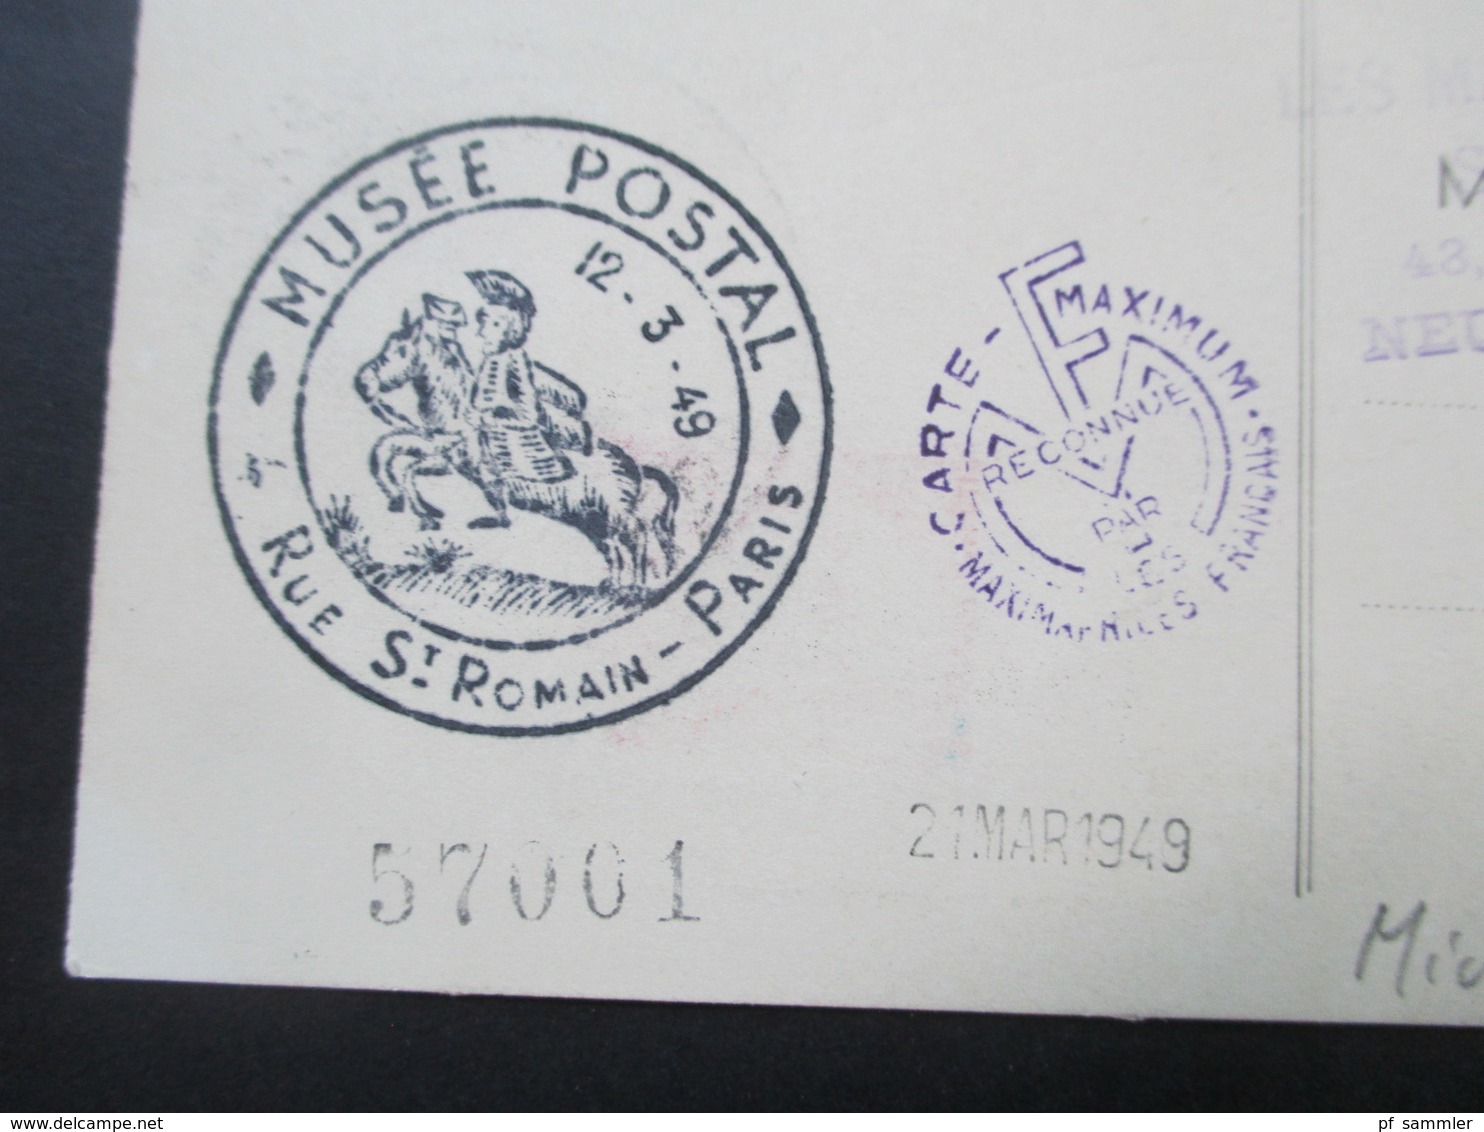 Frankreich 1949 Nr. 831 MK Paul Langevin SST Musee Postal Paris Les Maximaphiles Francais Imprime - Lettres & Documents